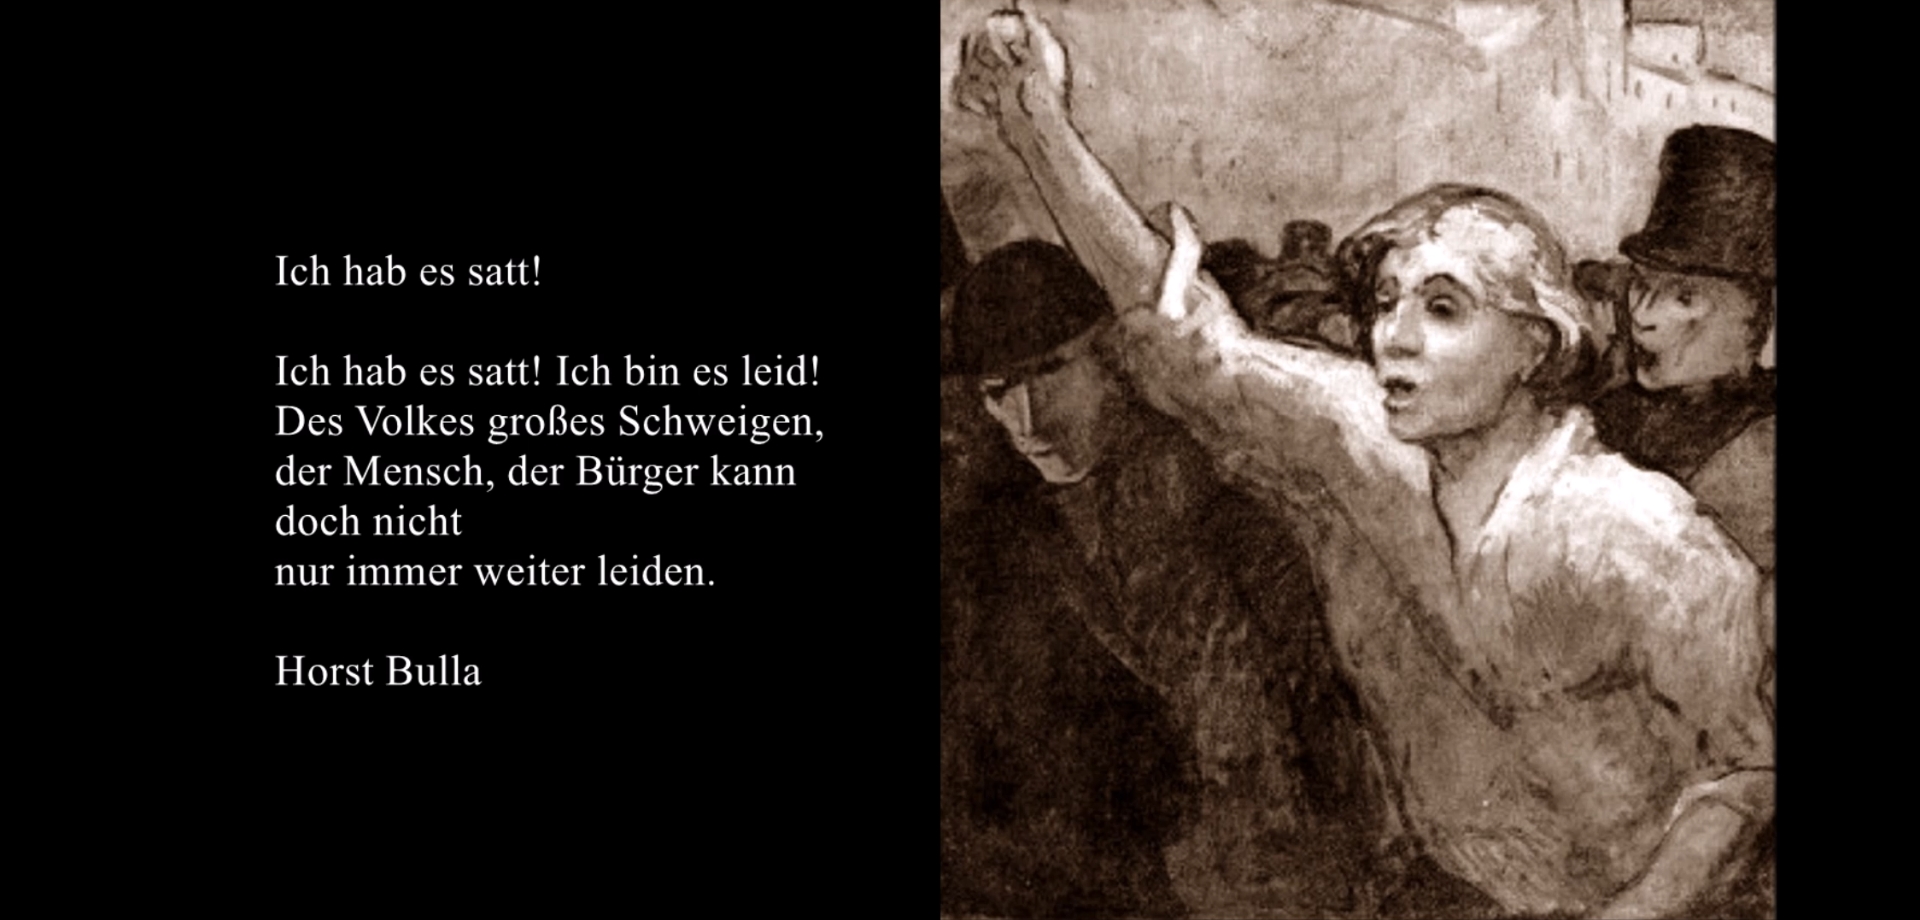 Bildgedicht: Gedicht, Ich hab es satt von Horst Bulla